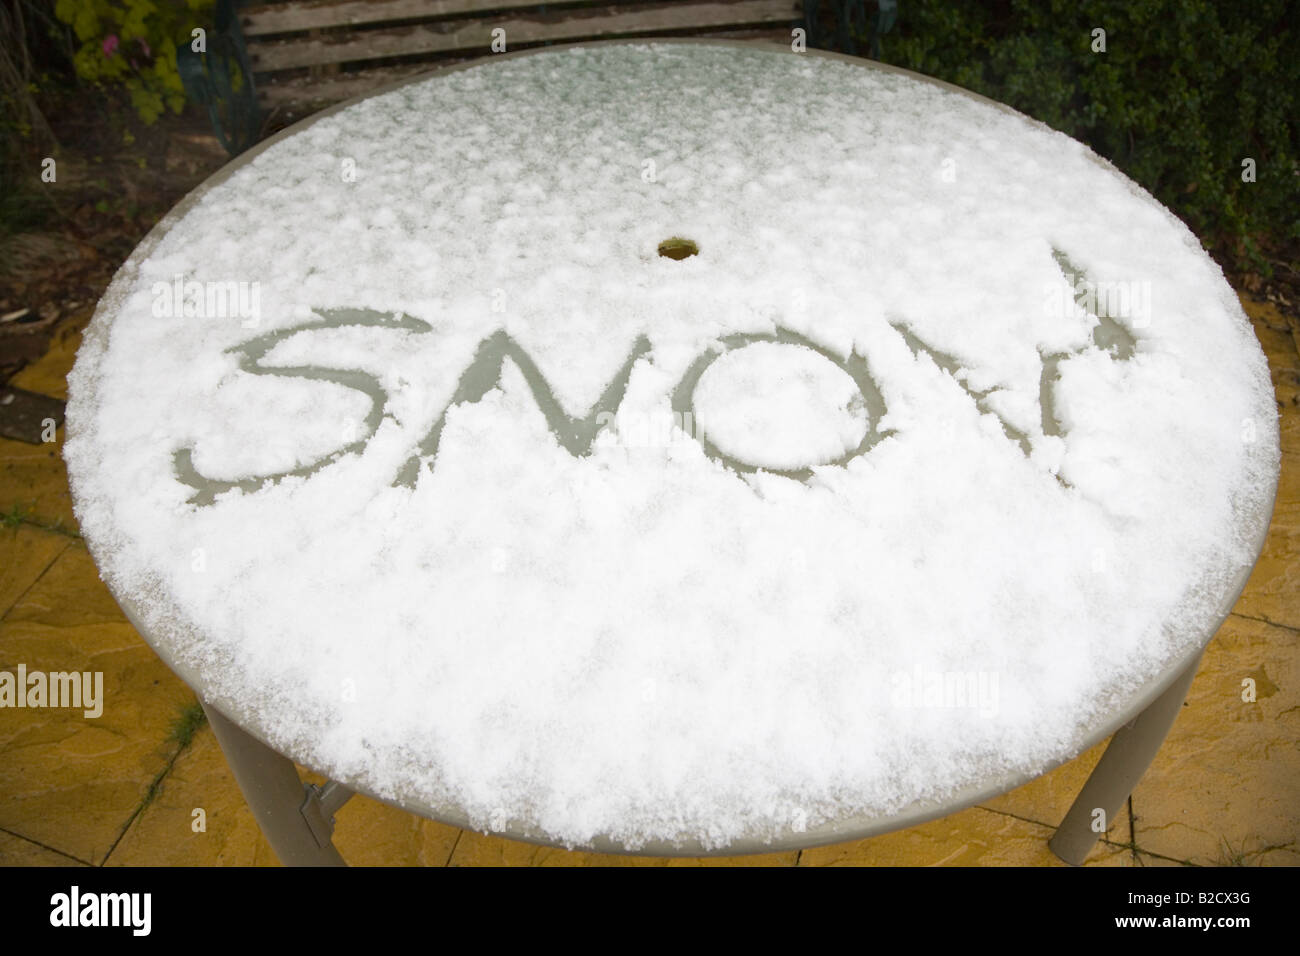 Das Wort Schnee geschrieben im Schnee auf einem Glas gekrönt Gartenterrasse Tabelle. Dorset. VEREINIGTES KÖNIGREICH. Stockfoto